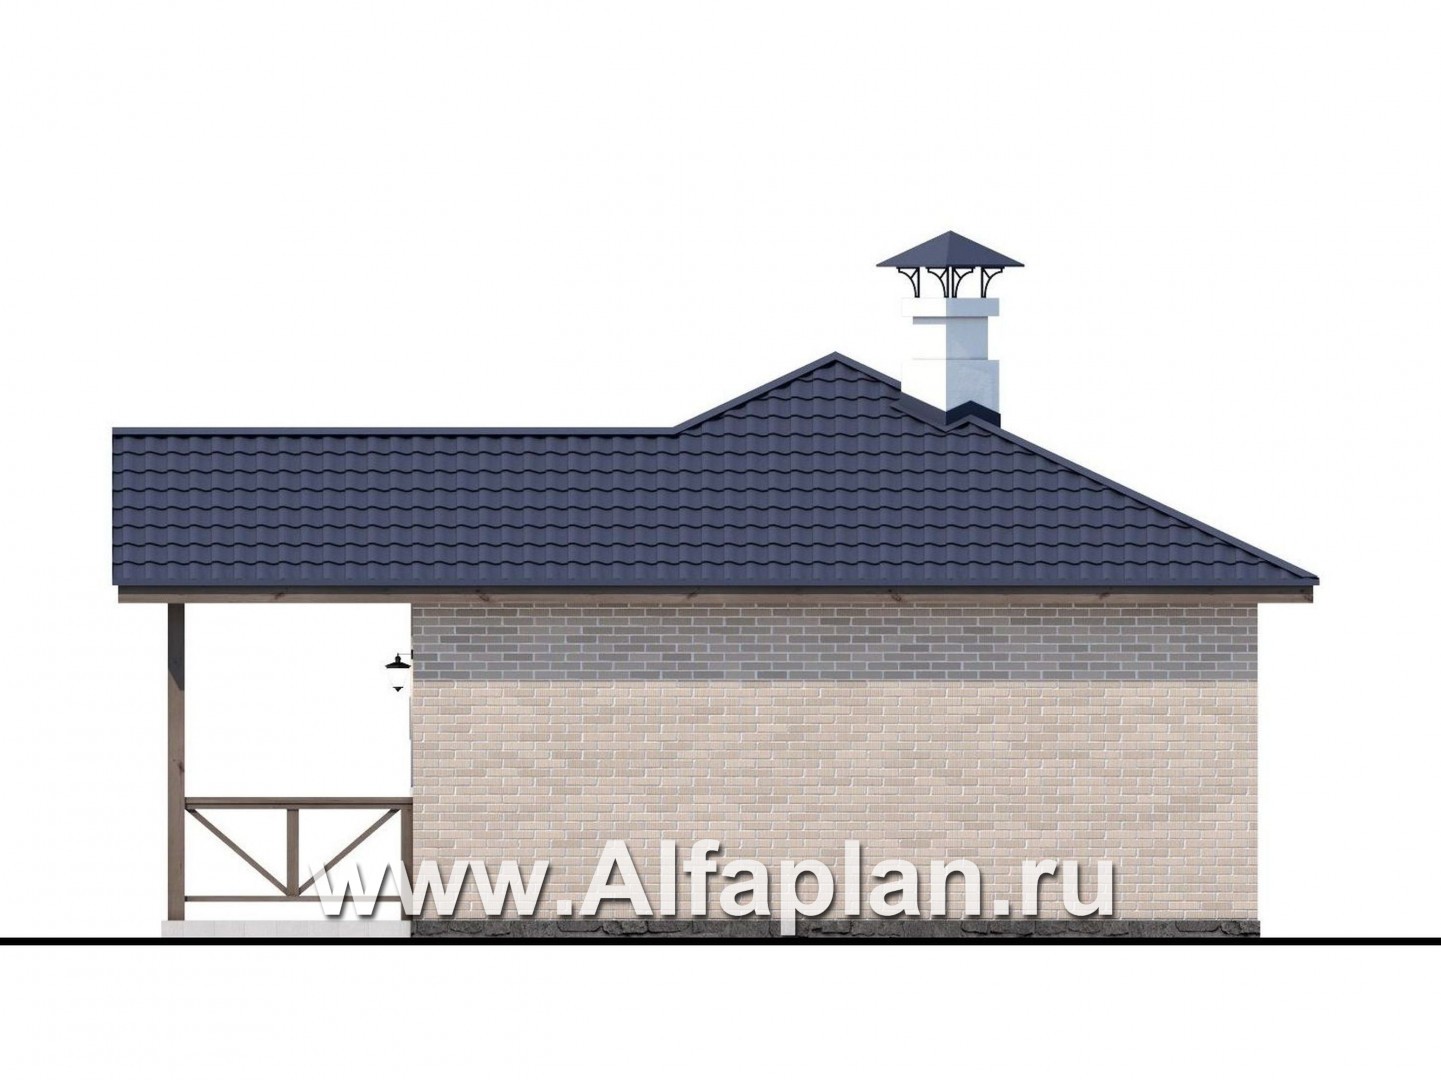 Проекты домов Альфаплан - Удобная и красивая  угловая баня - изображение фасада №2